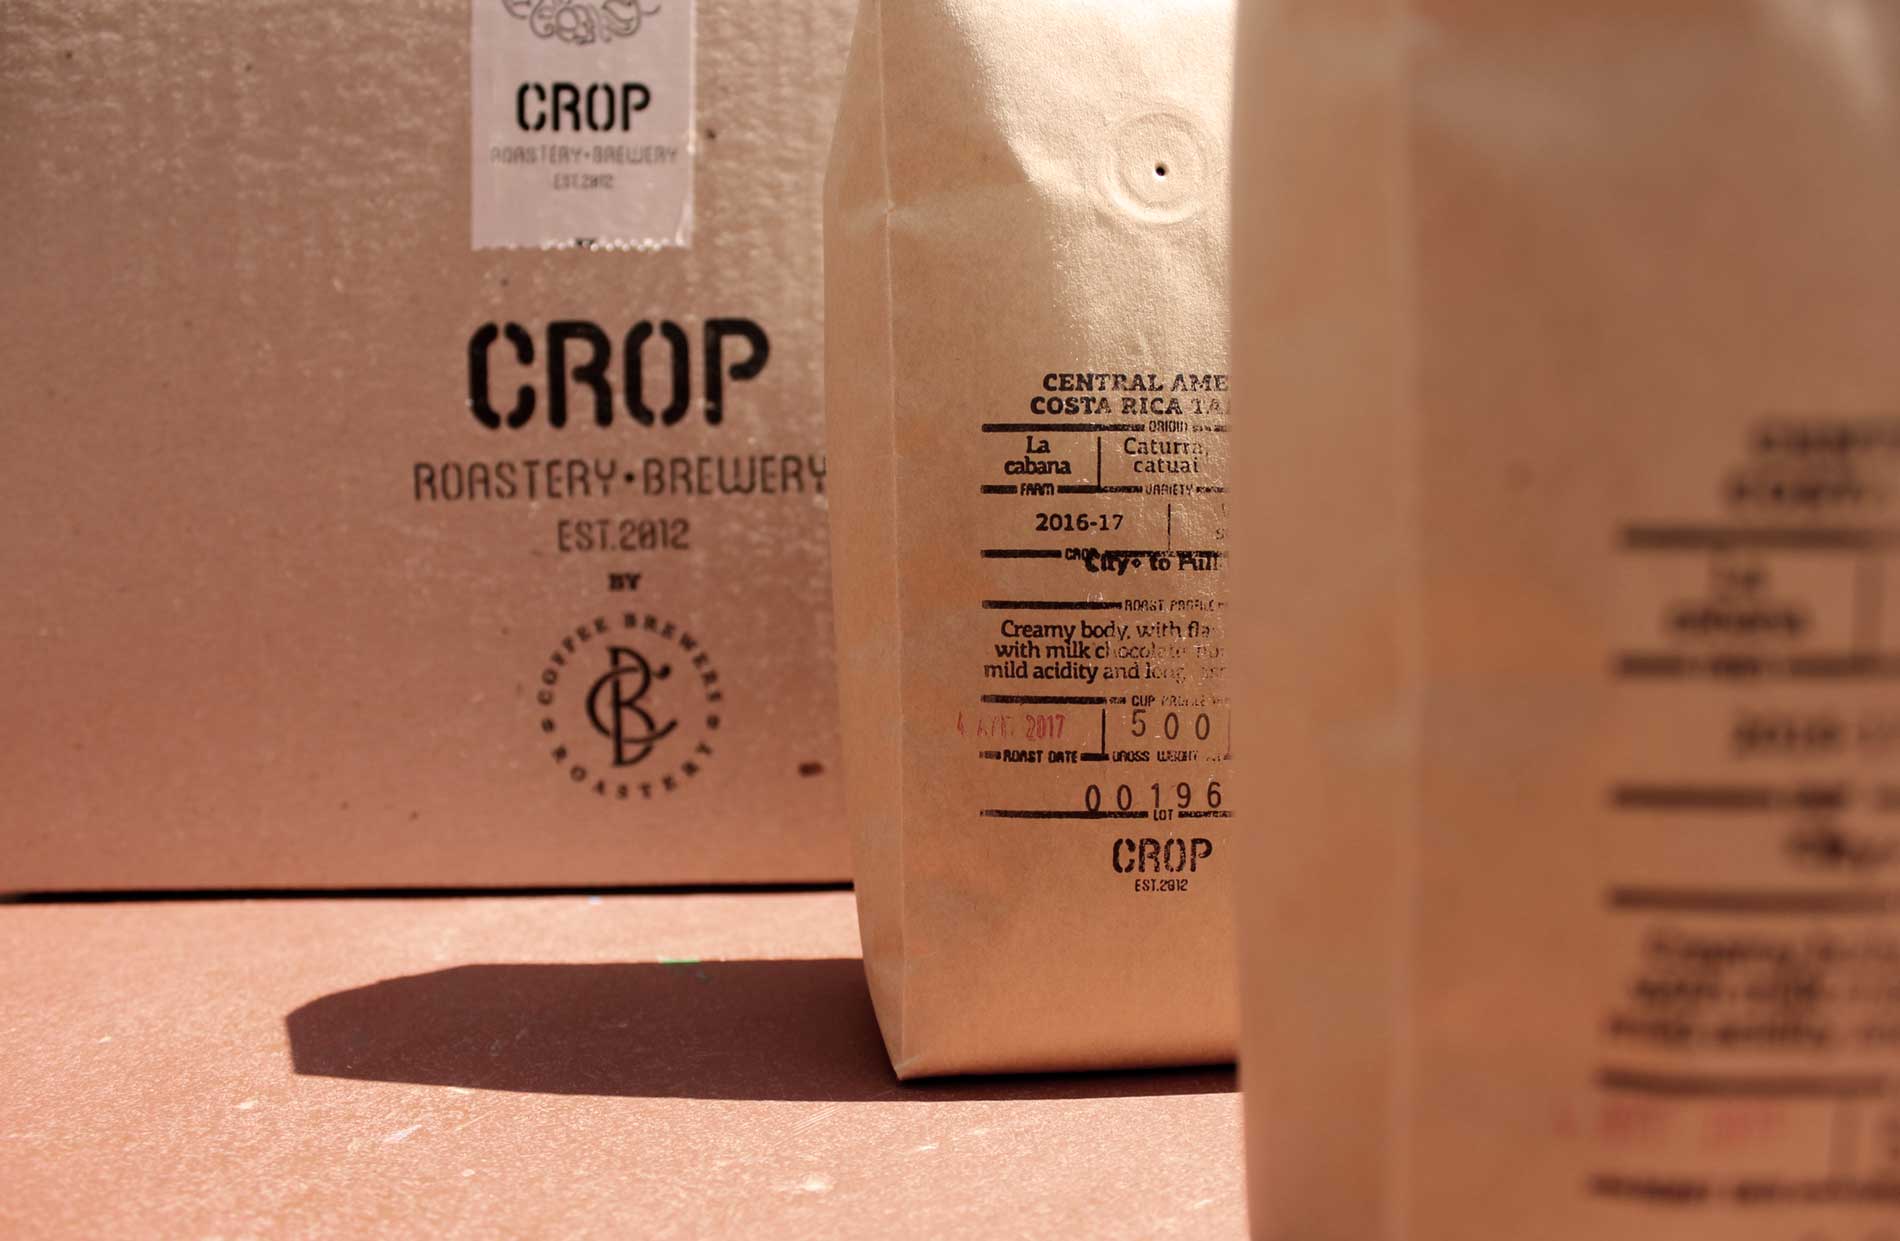 Crop packaging